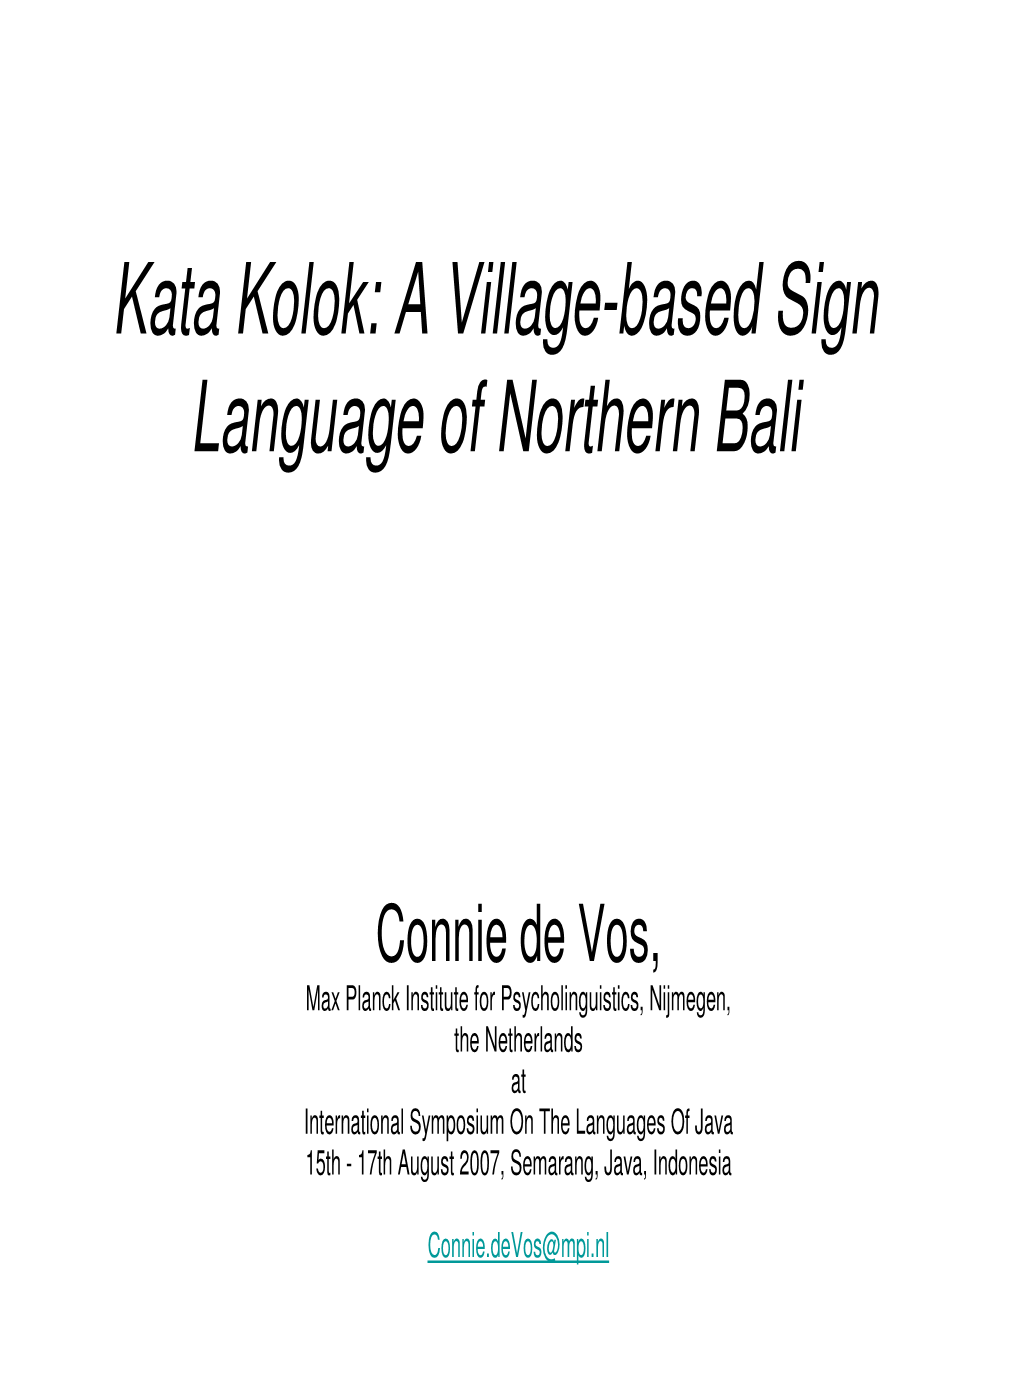 Kata Kolok: a Village-Based Sign Language of Northern Bali